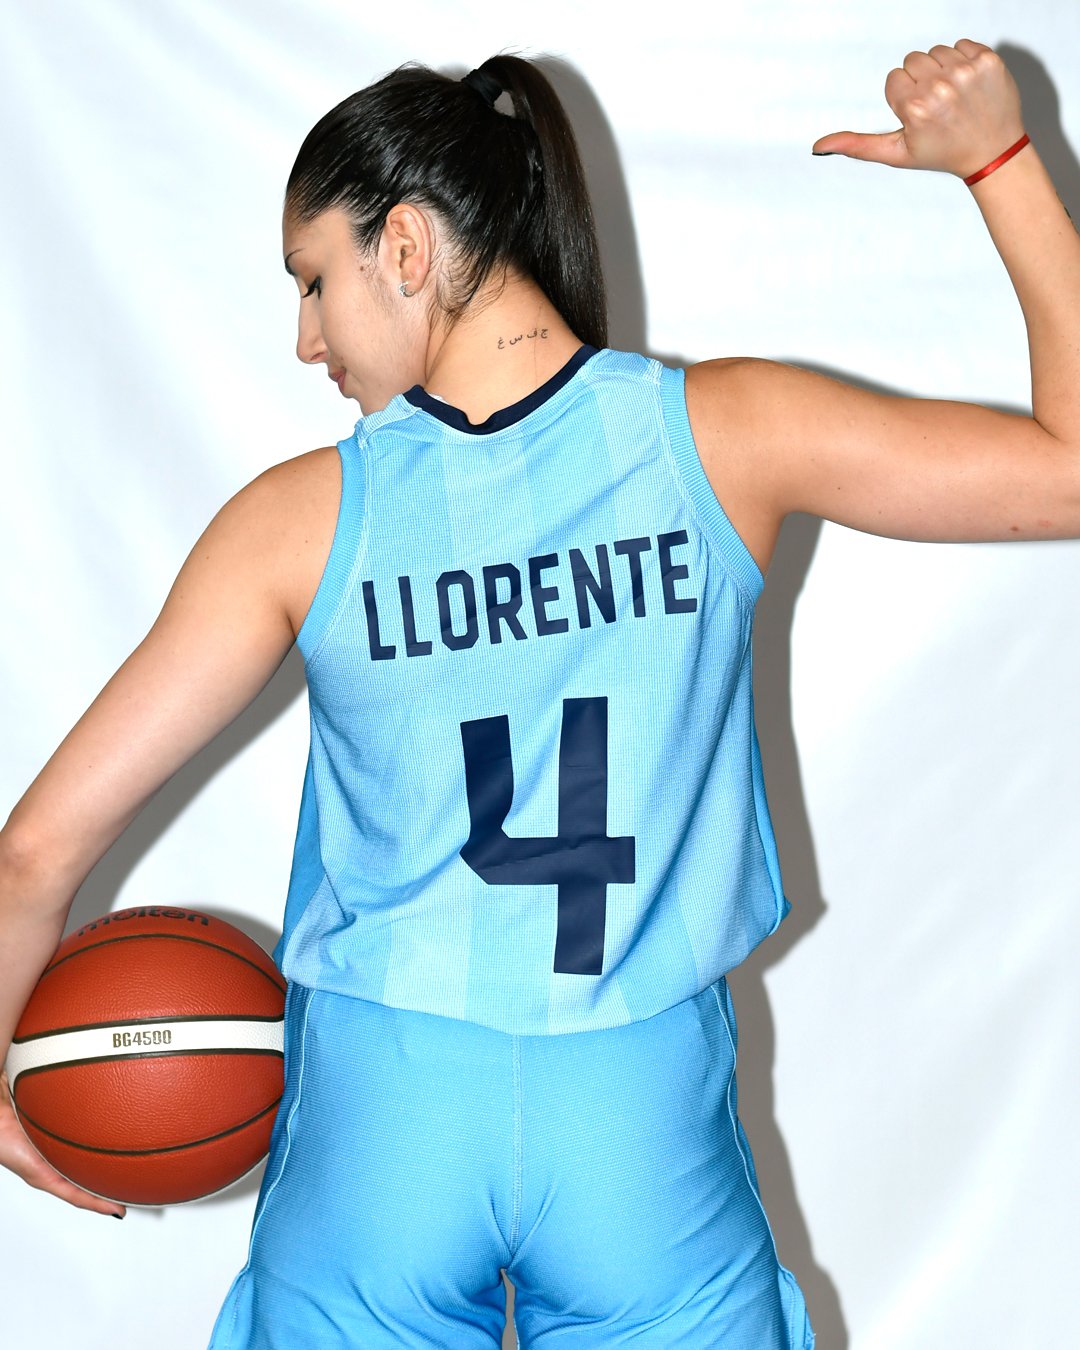 argentina jordan basketball jersey